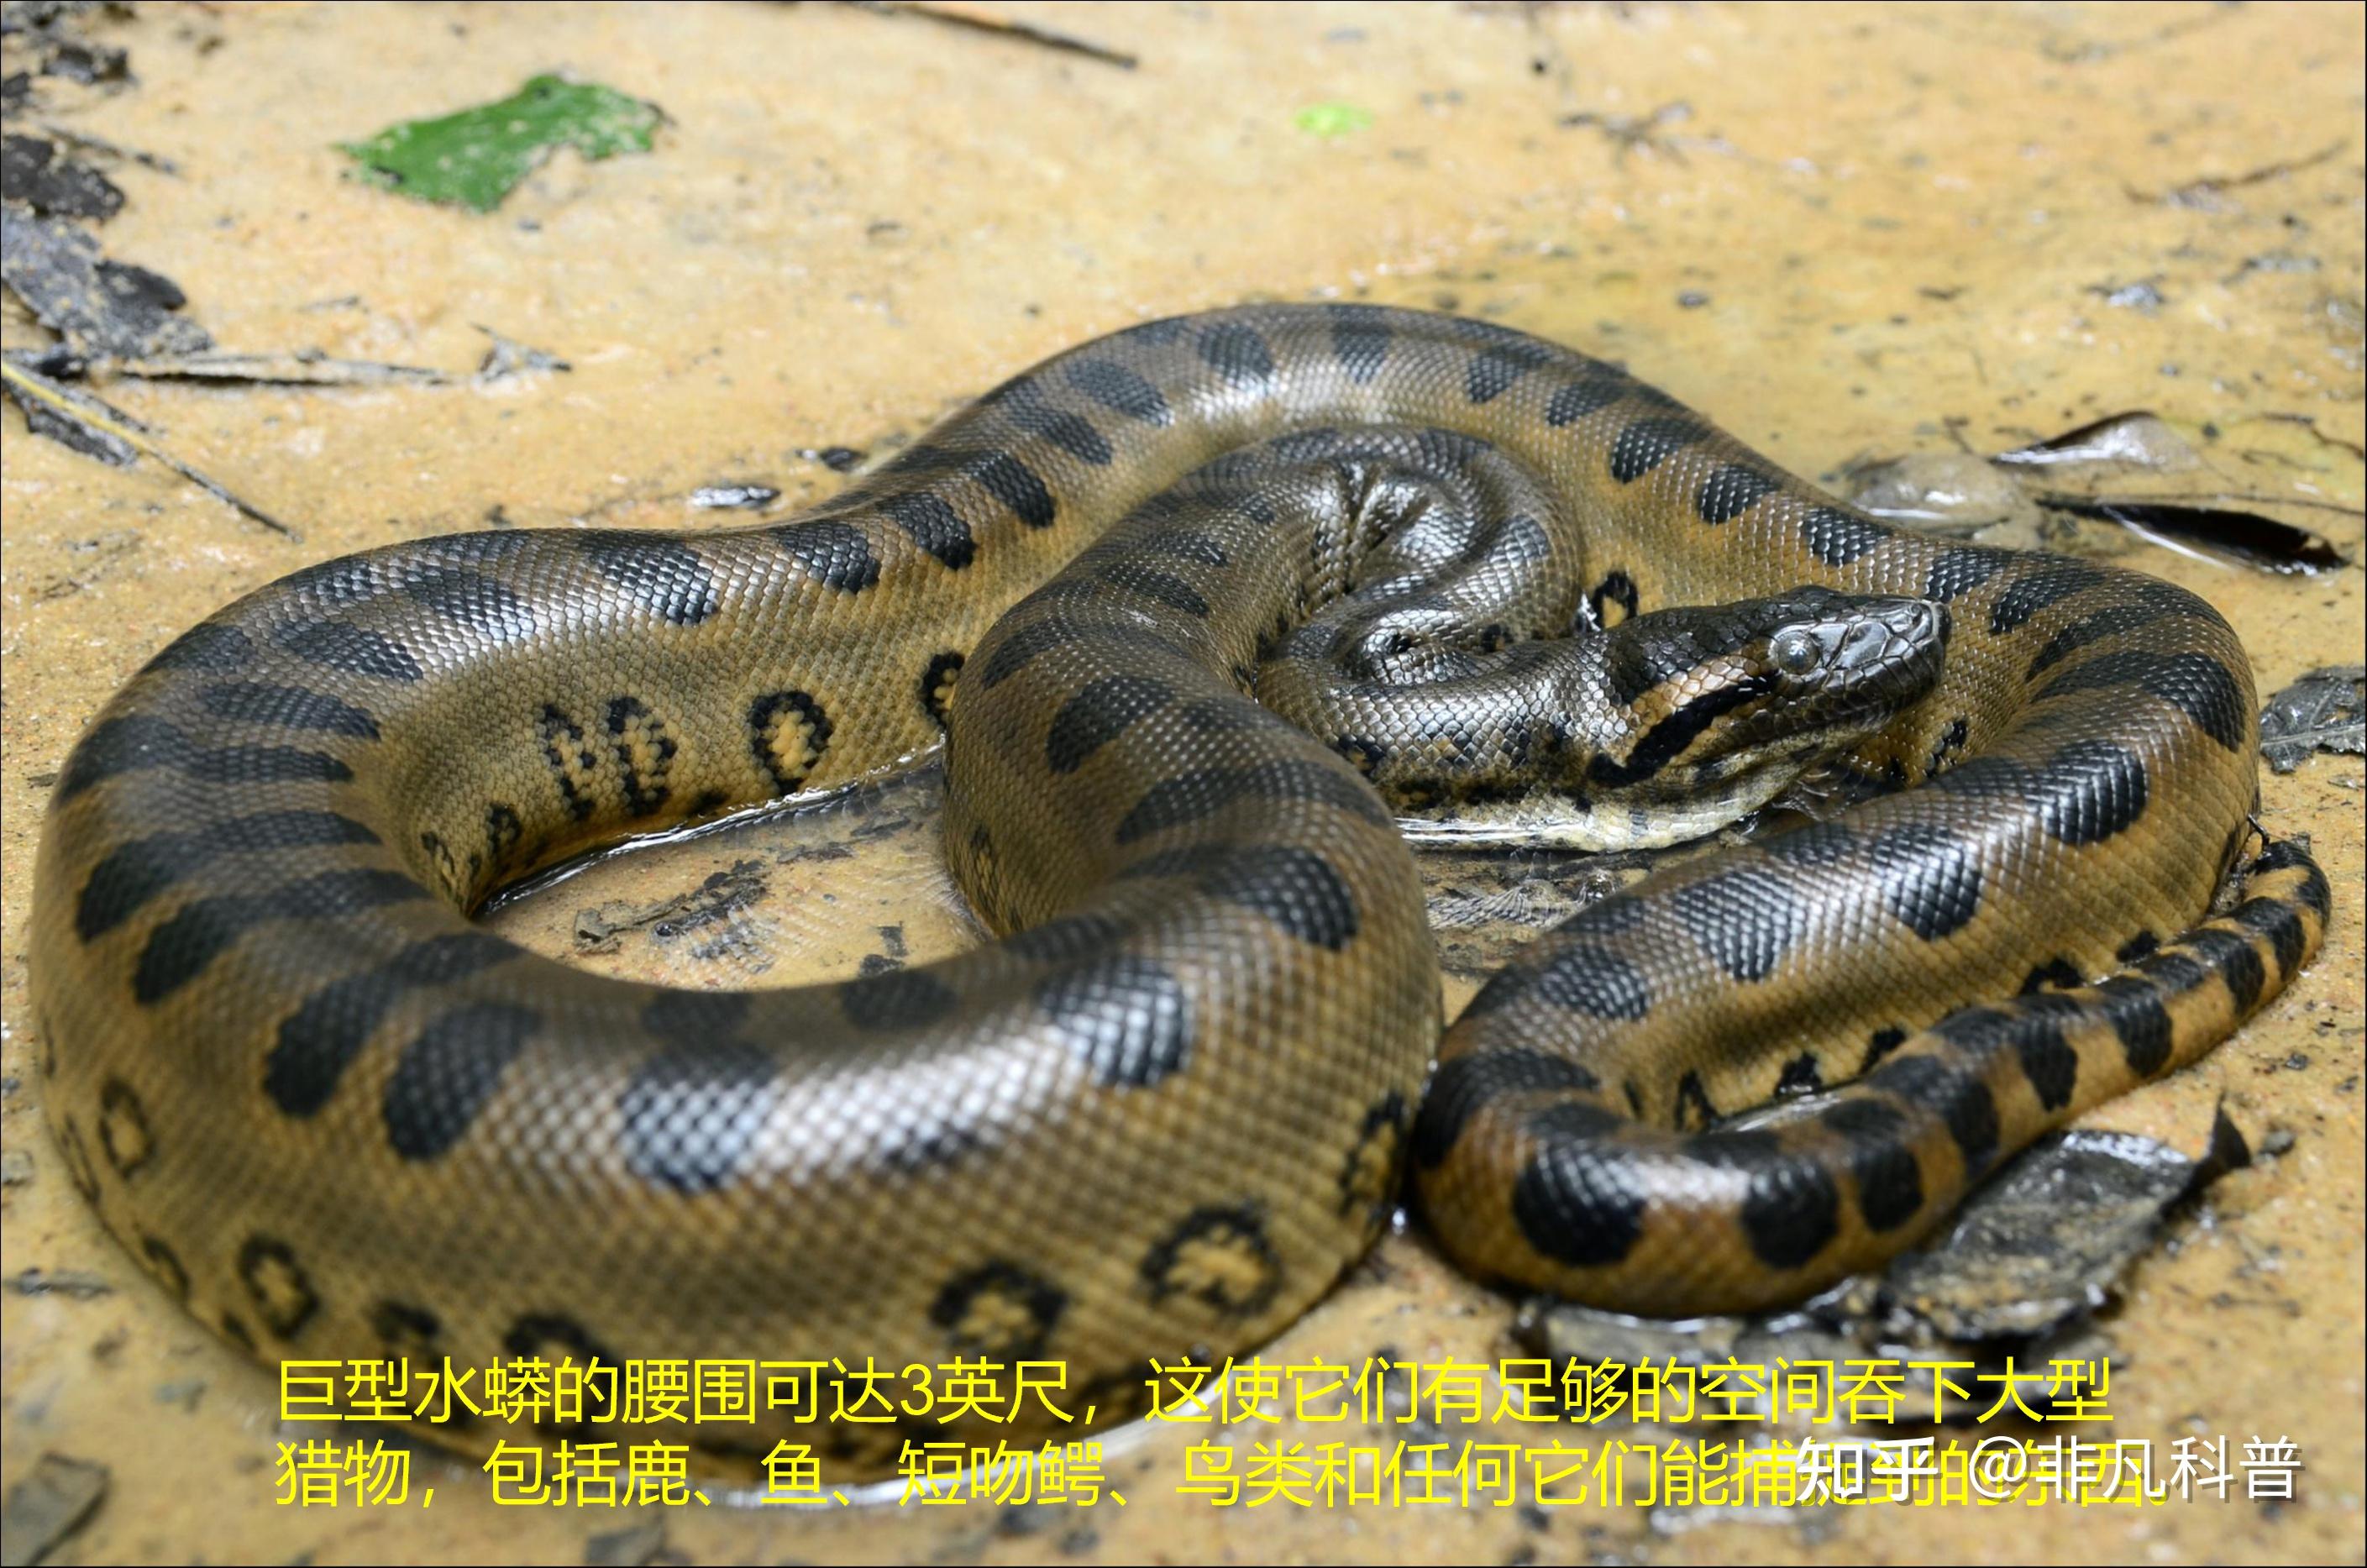 世界最大的蛇图片 世界上最大的蛇有多长_华夏智能网